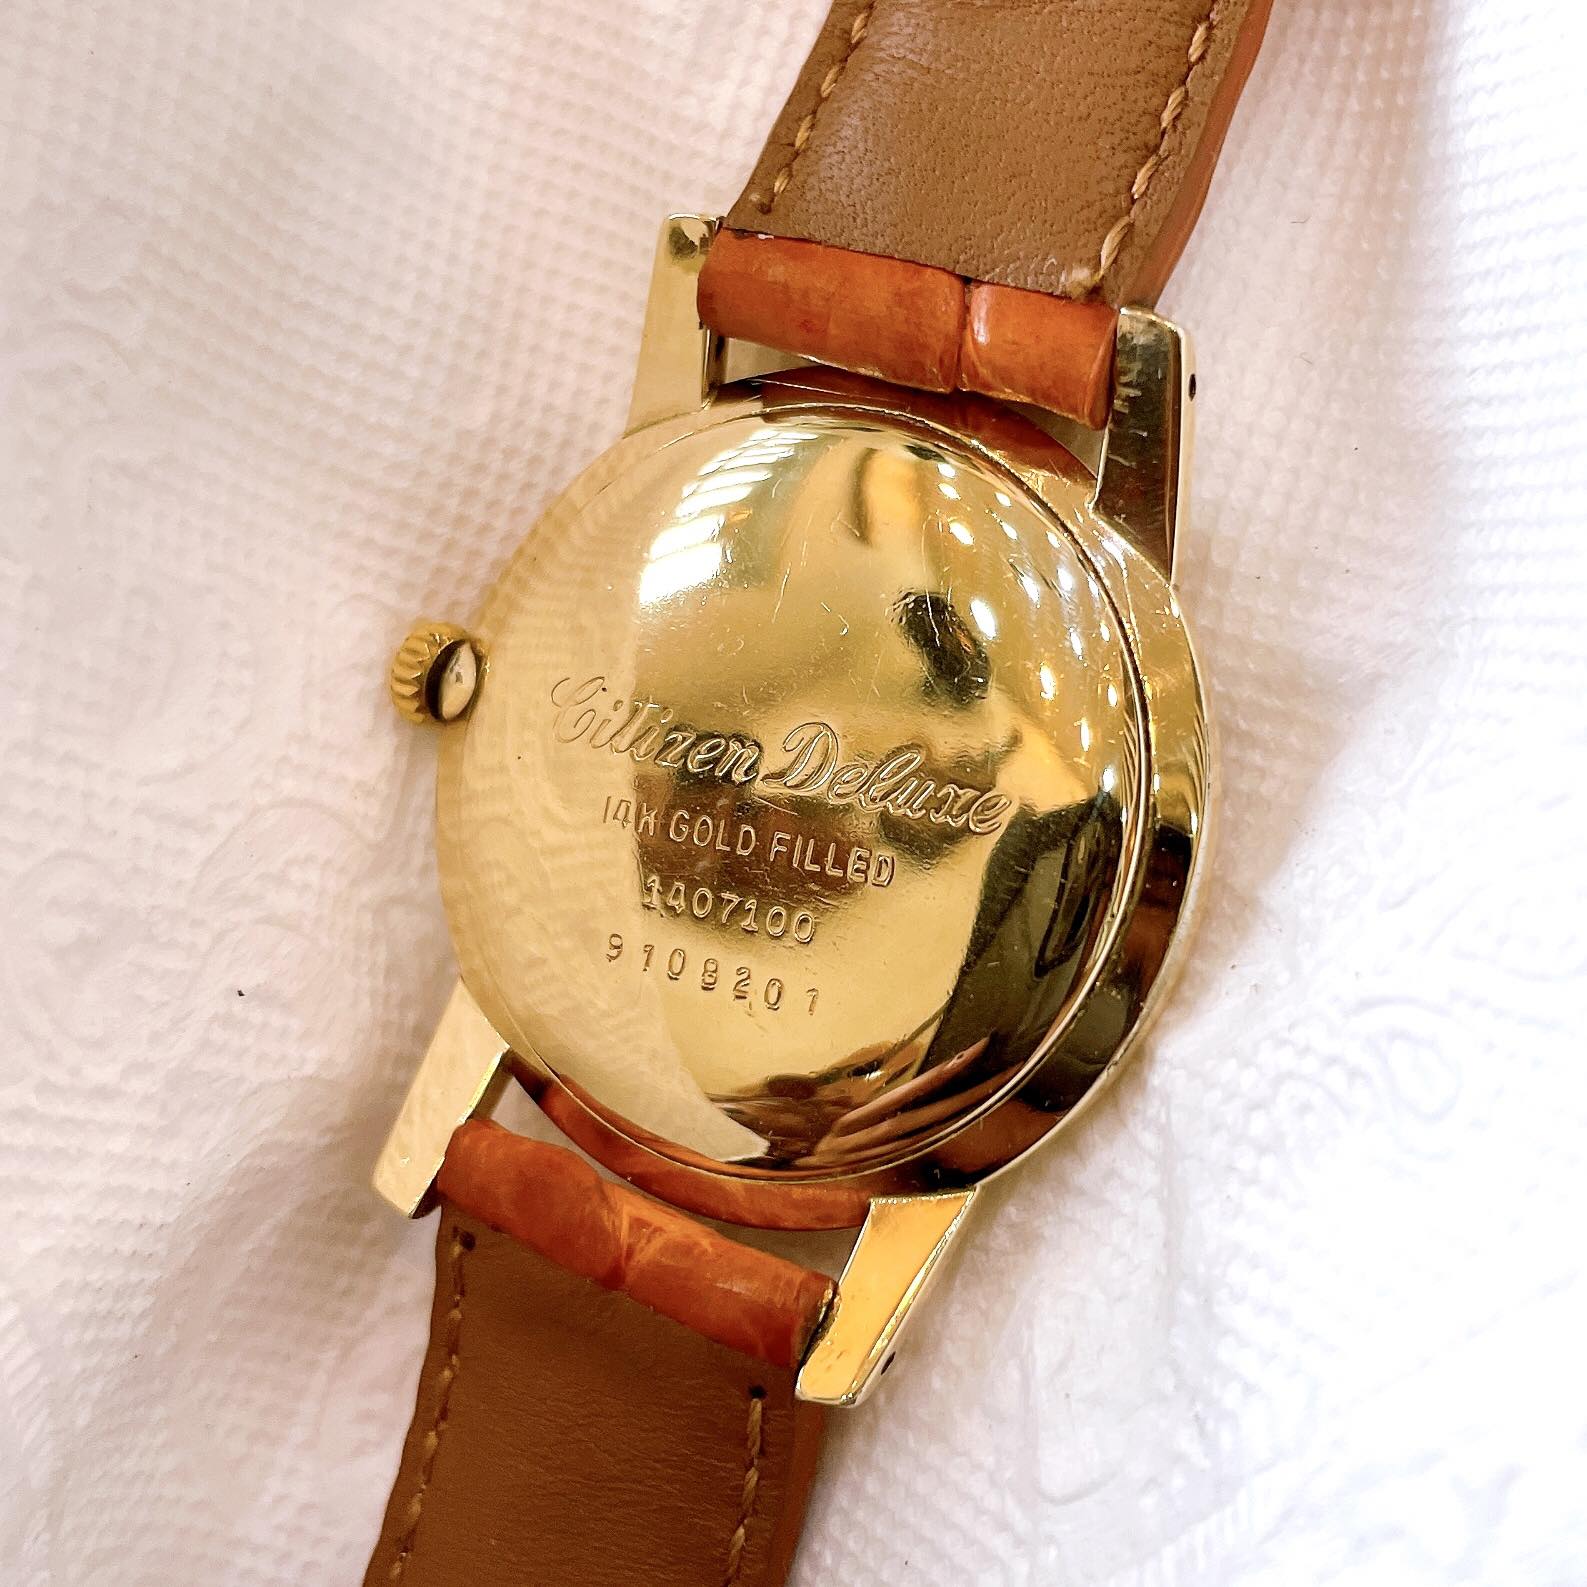 Đồng hồ cổ CITIZEN bọc vàng 14k goldfilled lên dây chính hãng nhật bản 